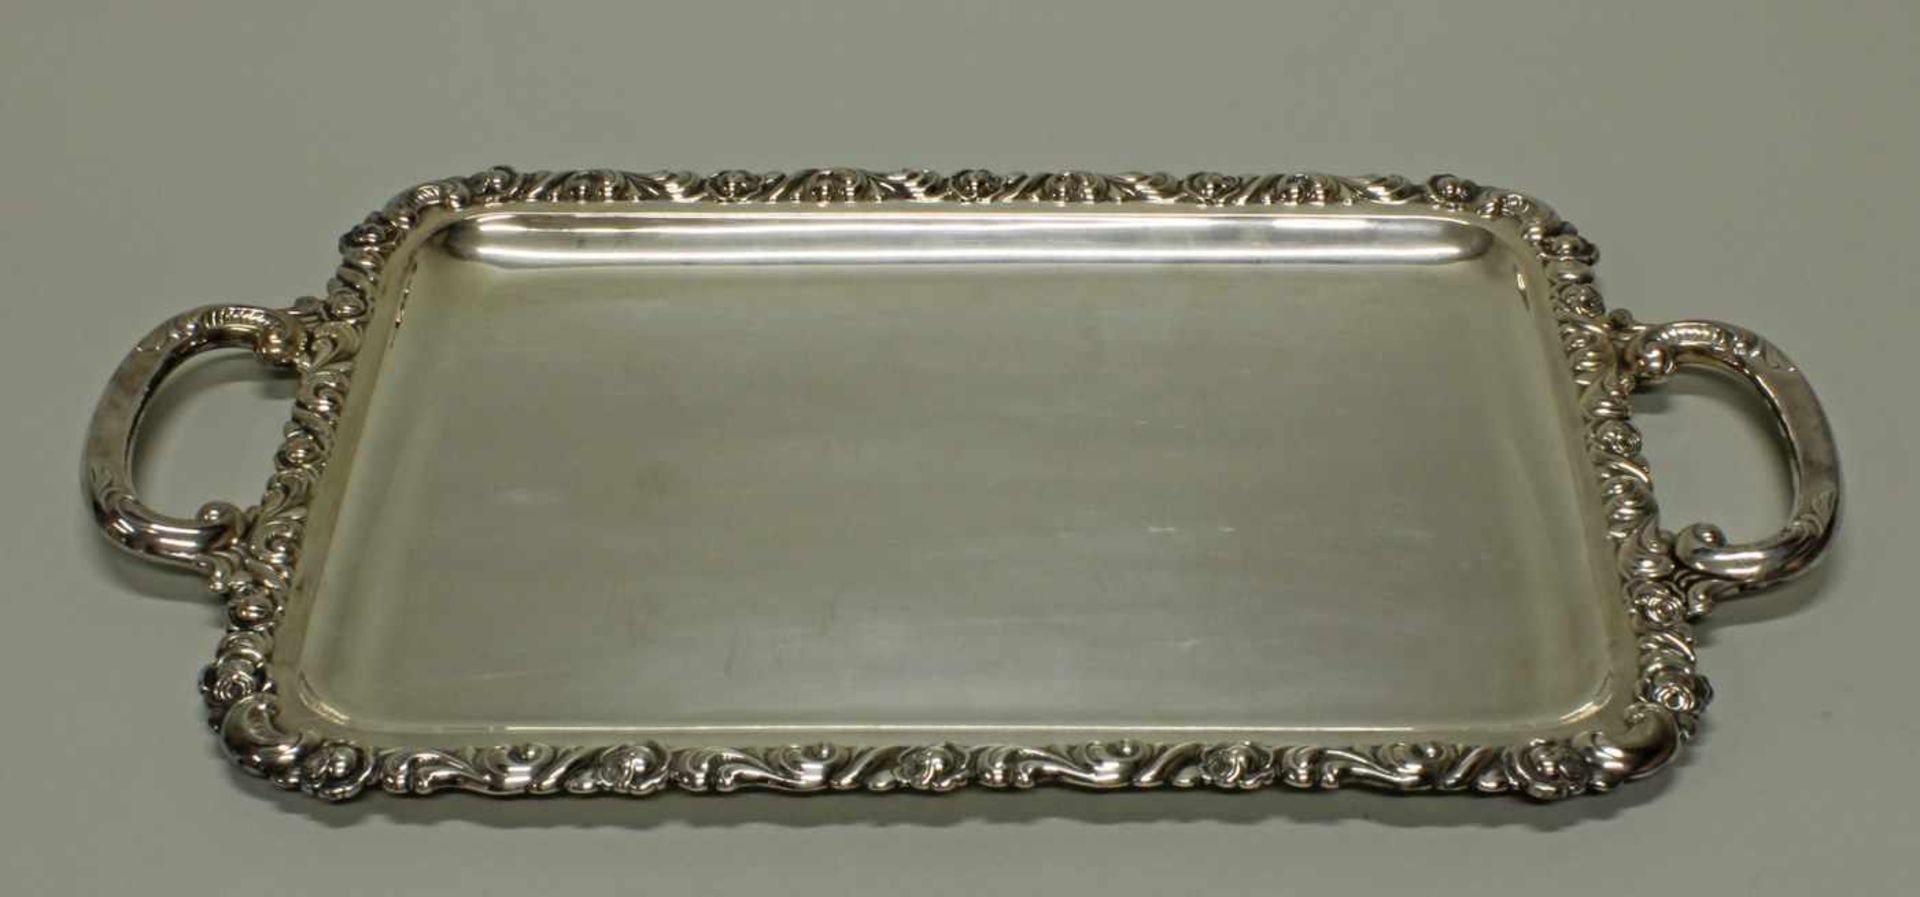 Tablett, Silber 925, Emil Hermann, rechteckig, Reliefrand mit Rosen und Ranken, zwei Handhaben, 53 x